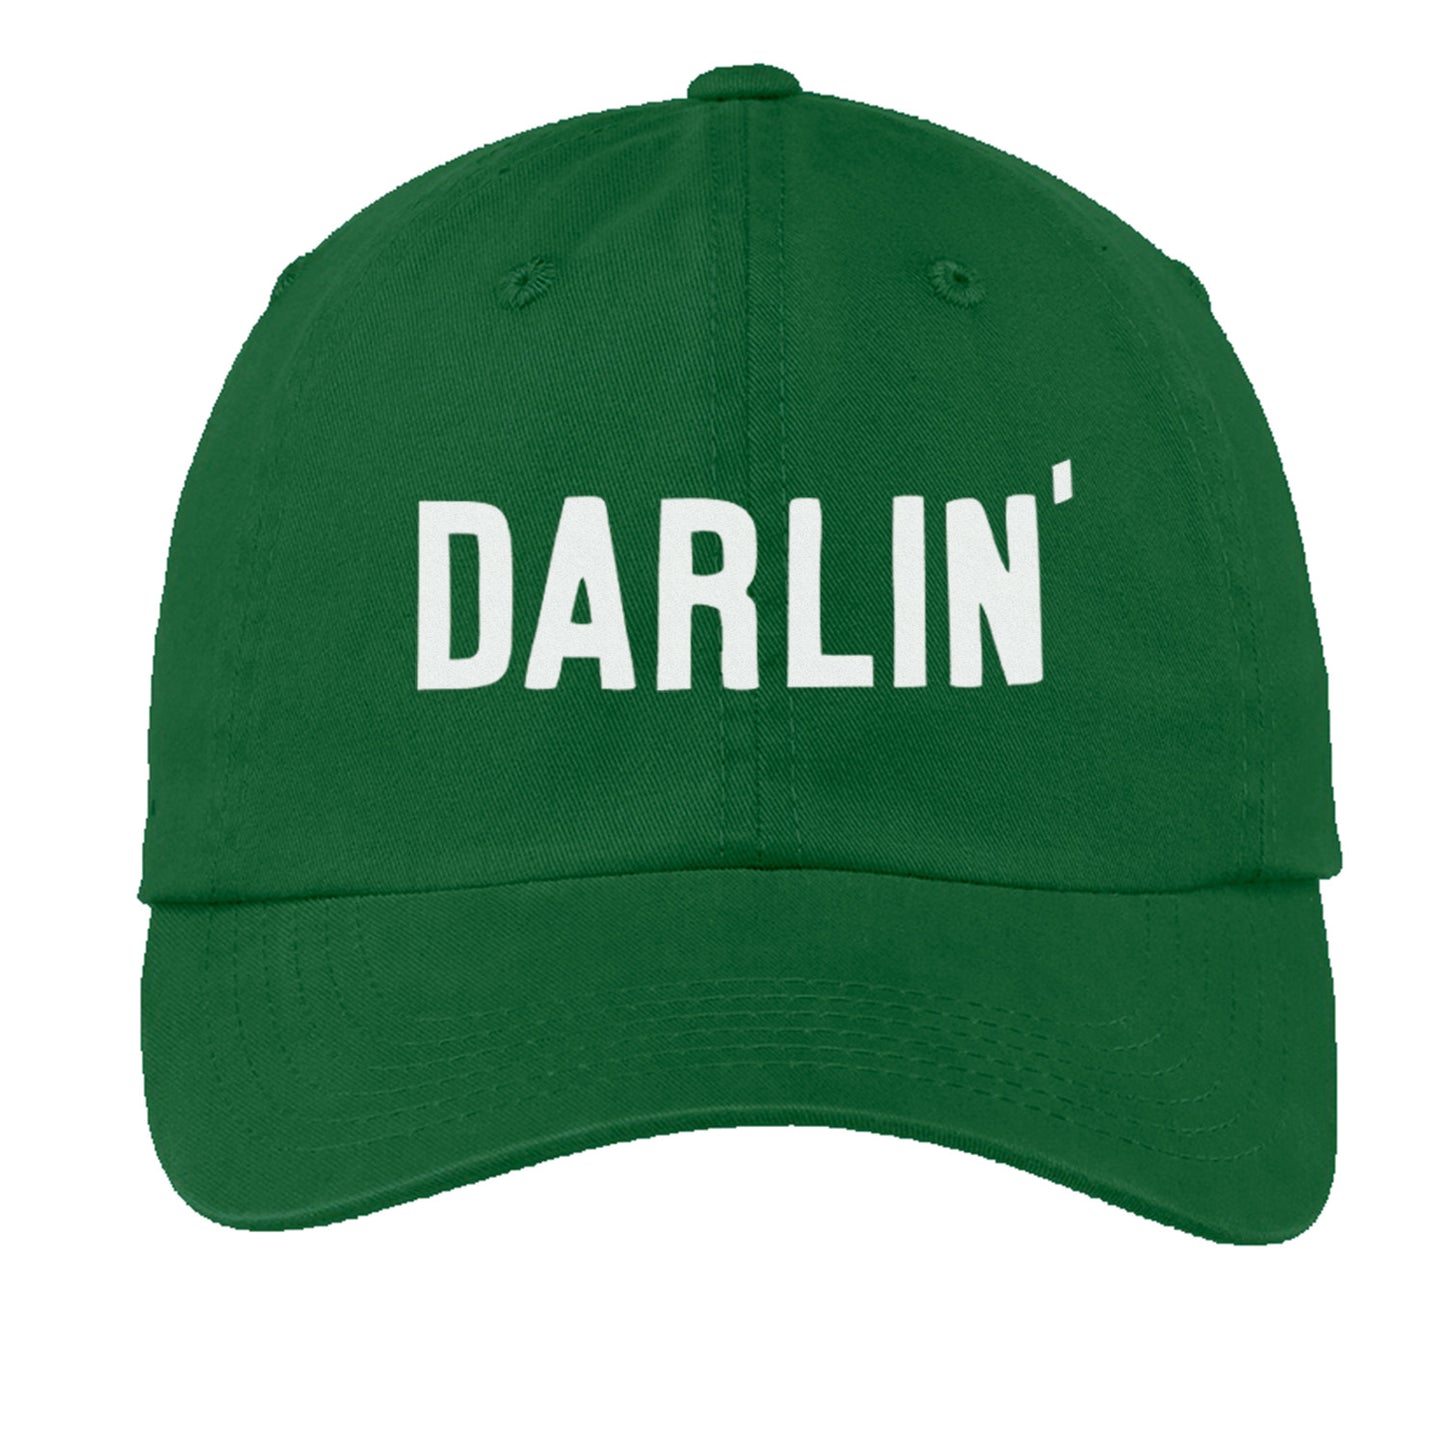 Darlin' Baseball Cap